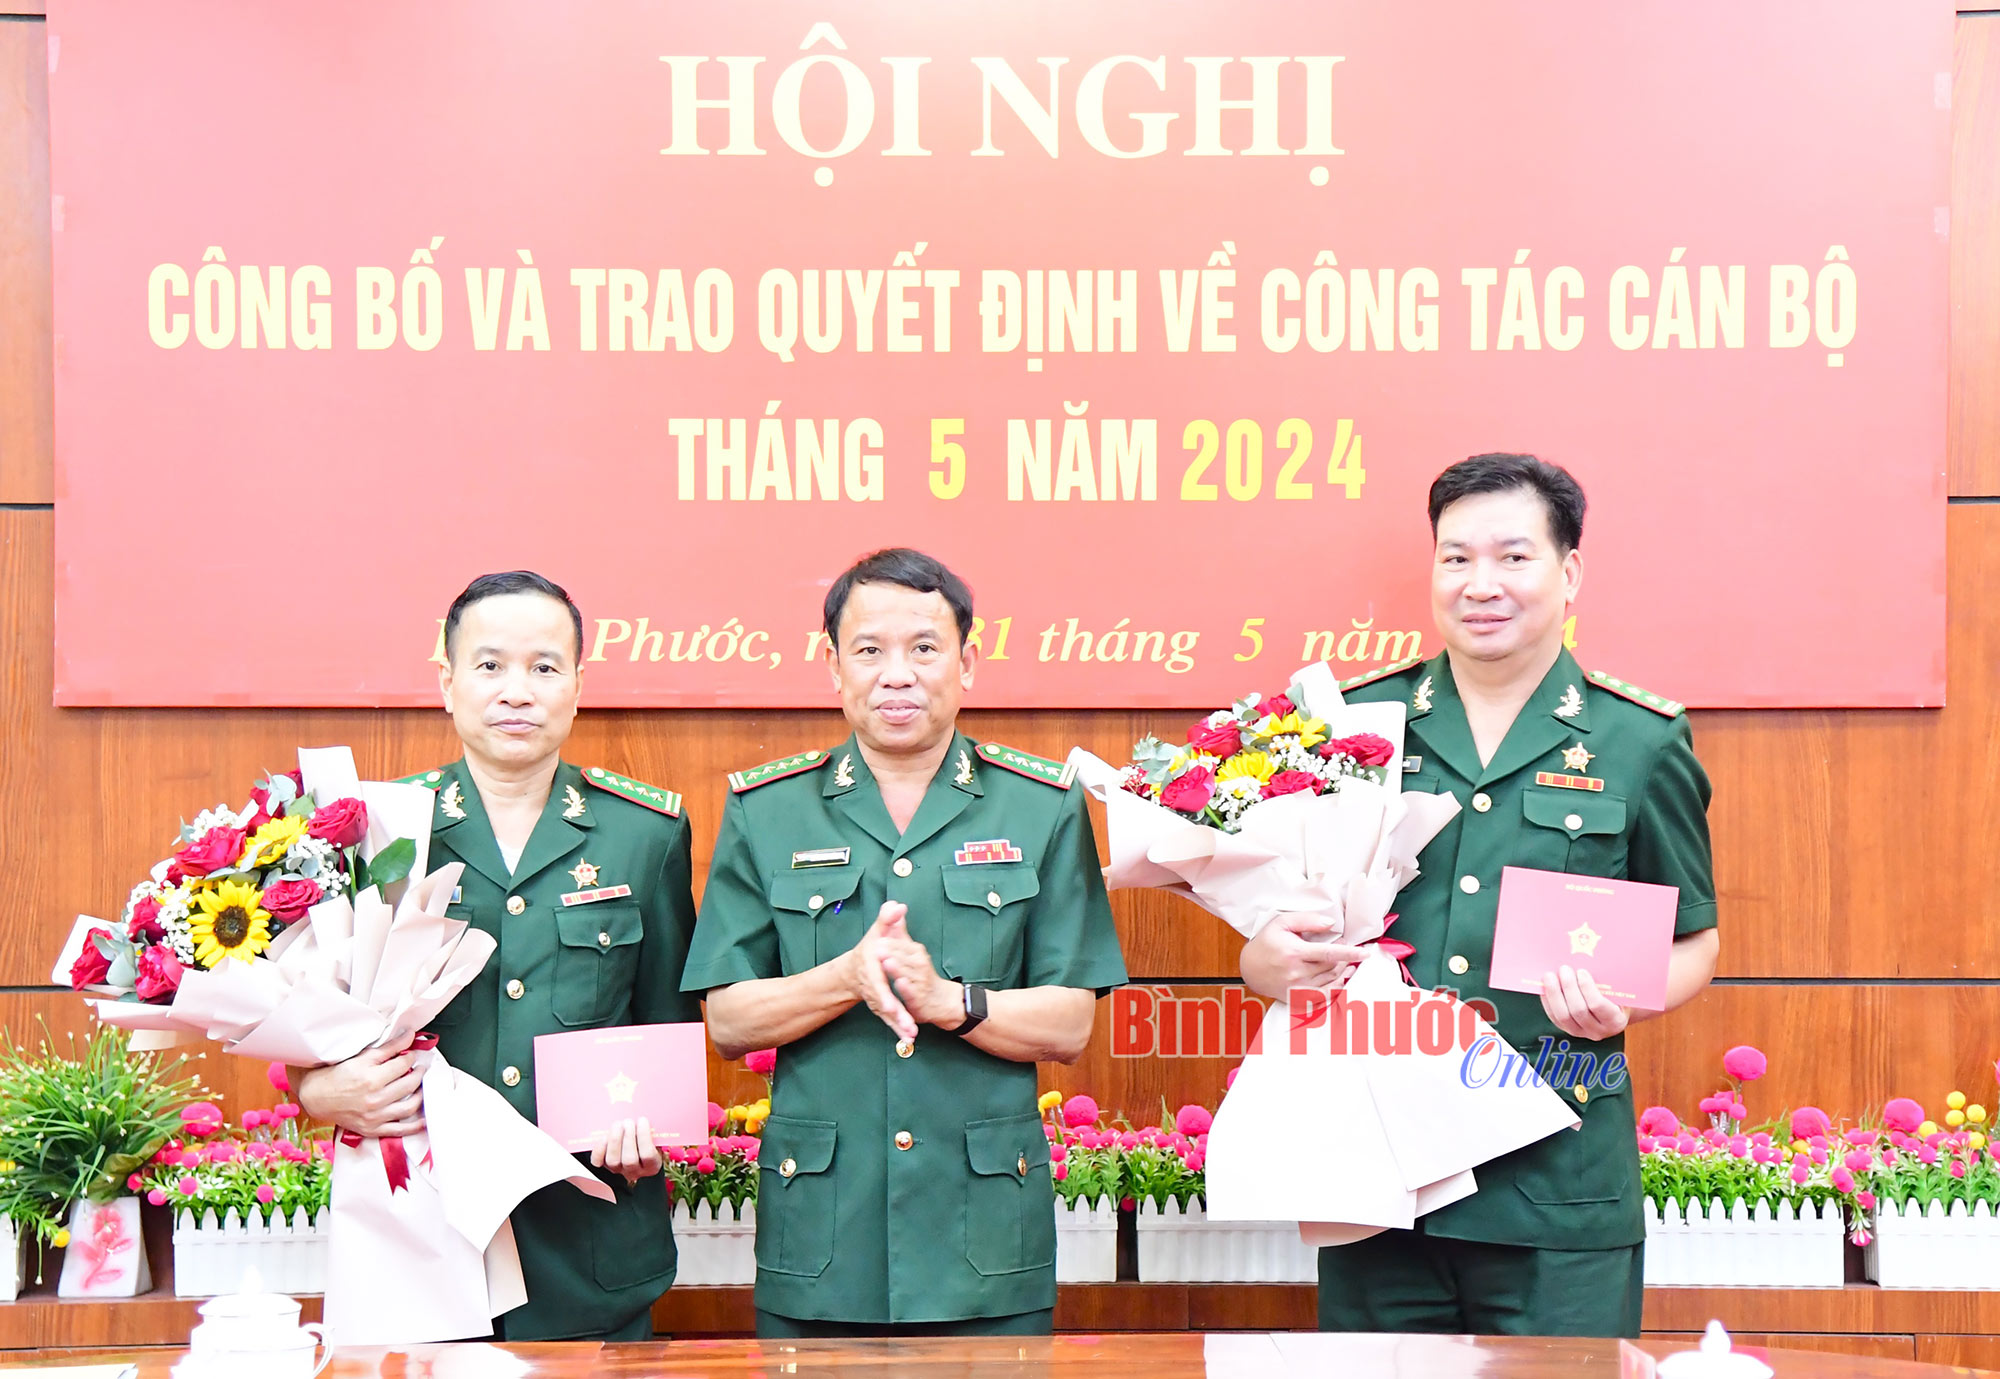 Bộ đội Biên phòng tỉnh Bình Phước trao quyết định về công tác cán bộ